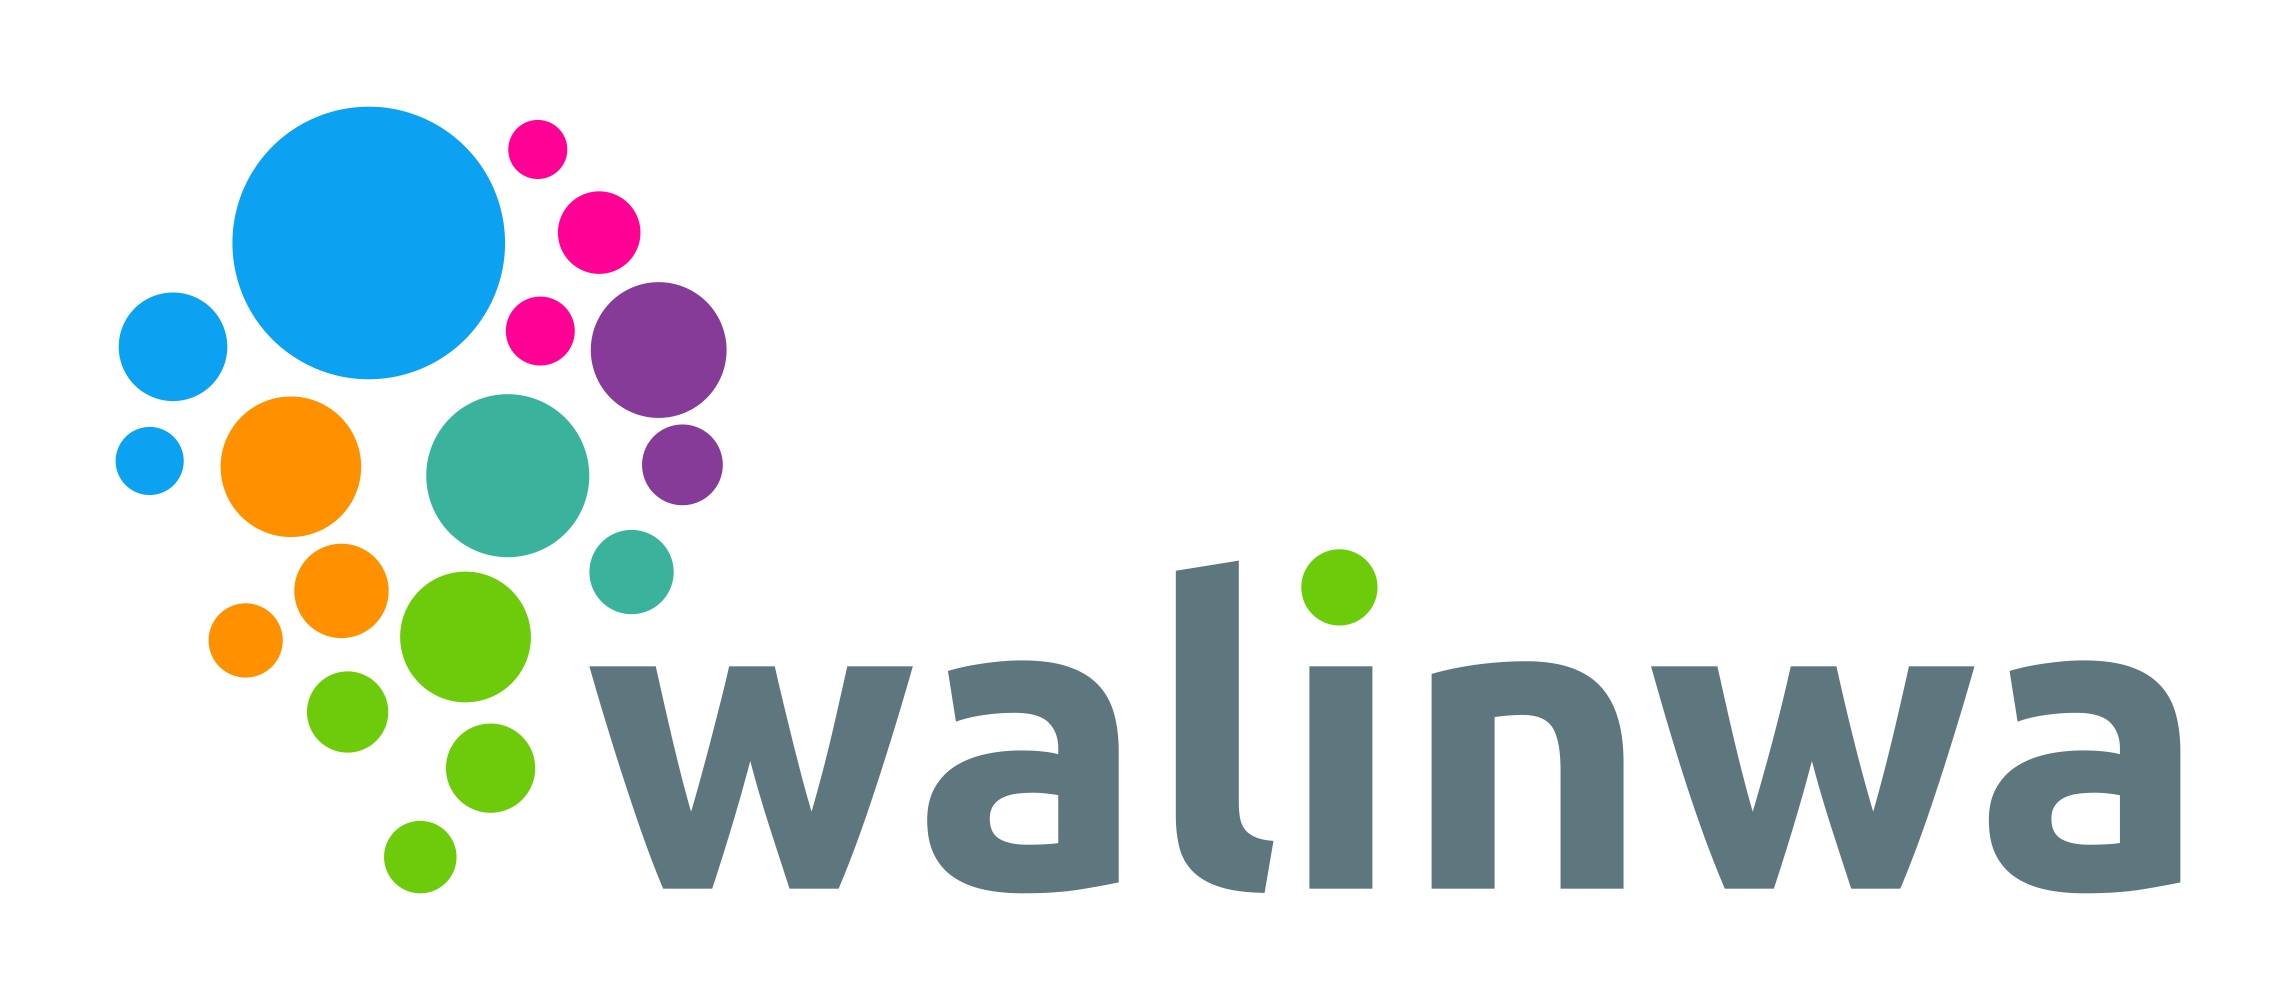 Walinwa permite mejorar la ortografía con solo 15 minutos diarios